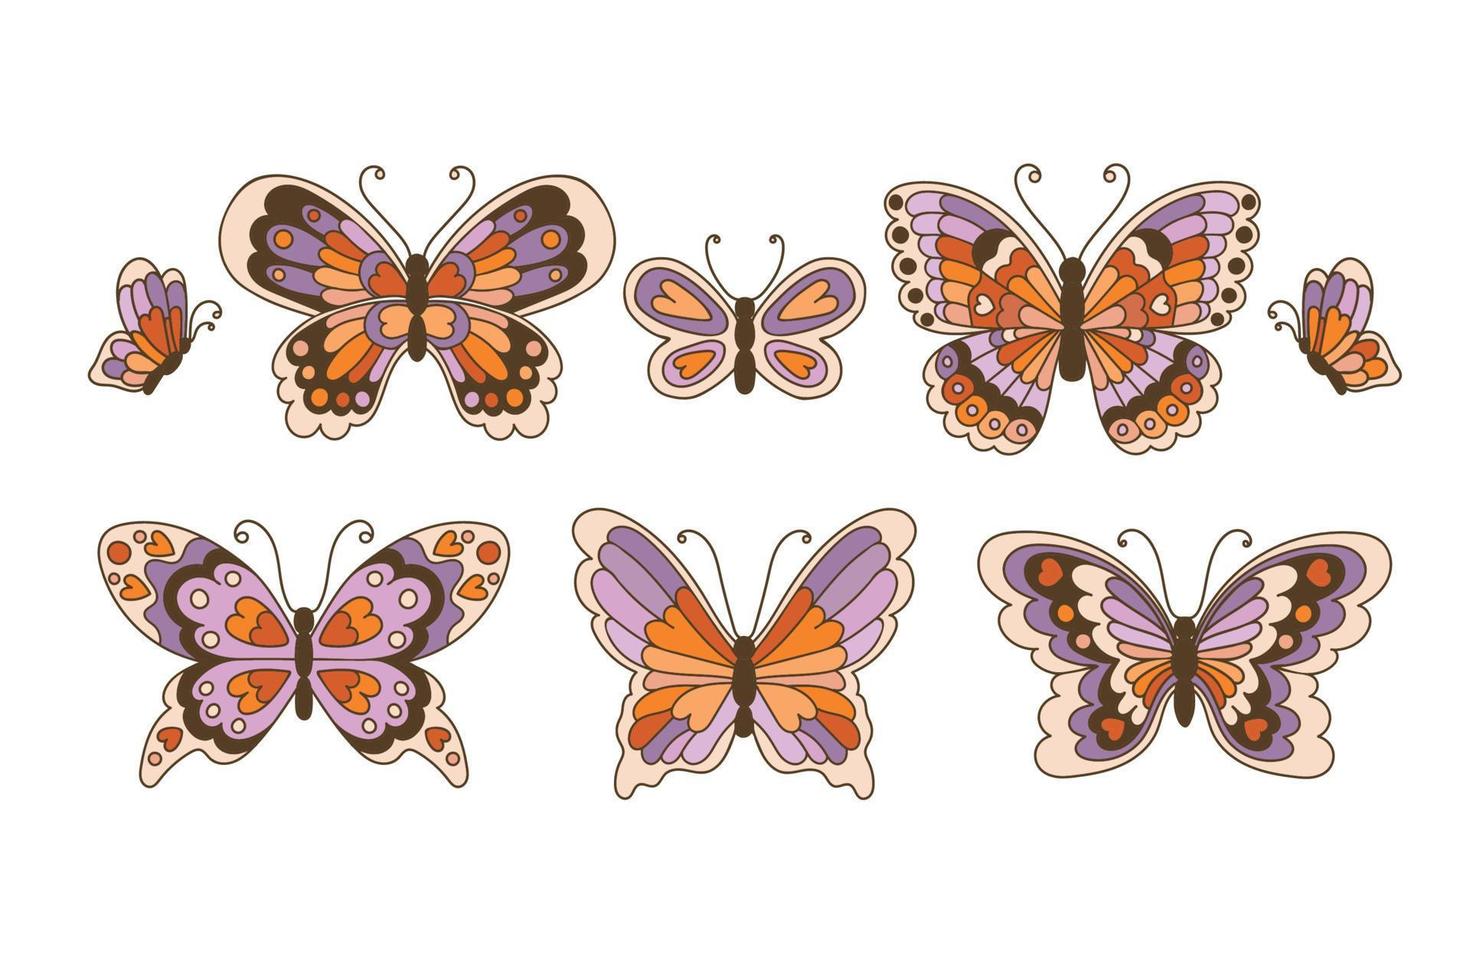 retro 60s 70s hippie verano maravilloso conjunto de mariposas elemento dibujado a mano ilustración vectorial. vector